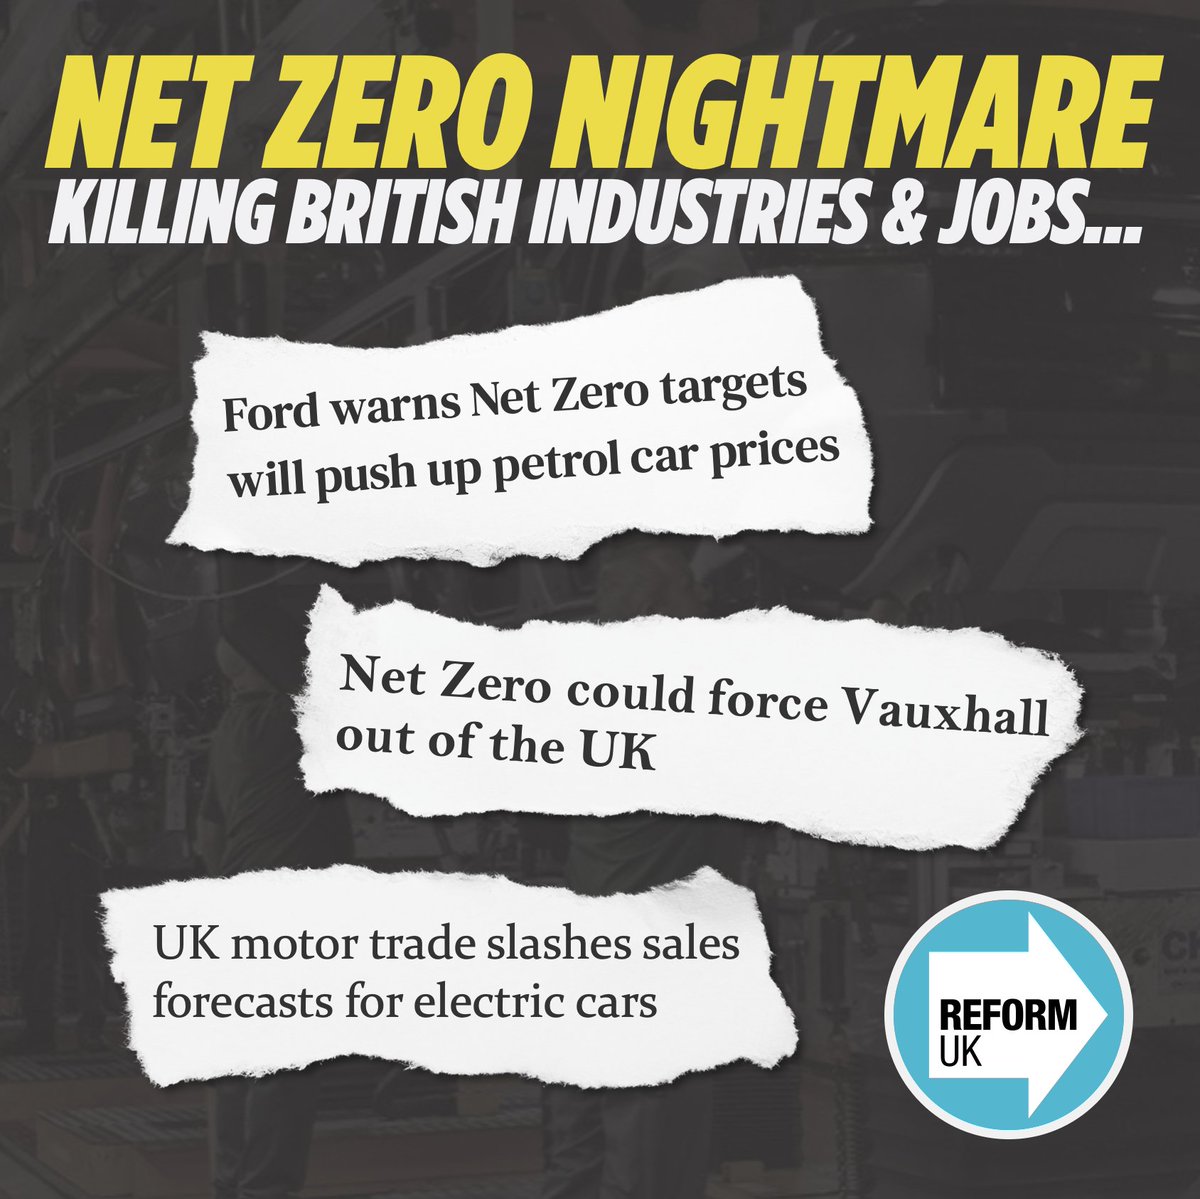 BRITAIN’S NET ZERO NIGHTMARE: Net Zero is killing British industries and jobs. Only Reform UK will scrap Net Zero 🚫